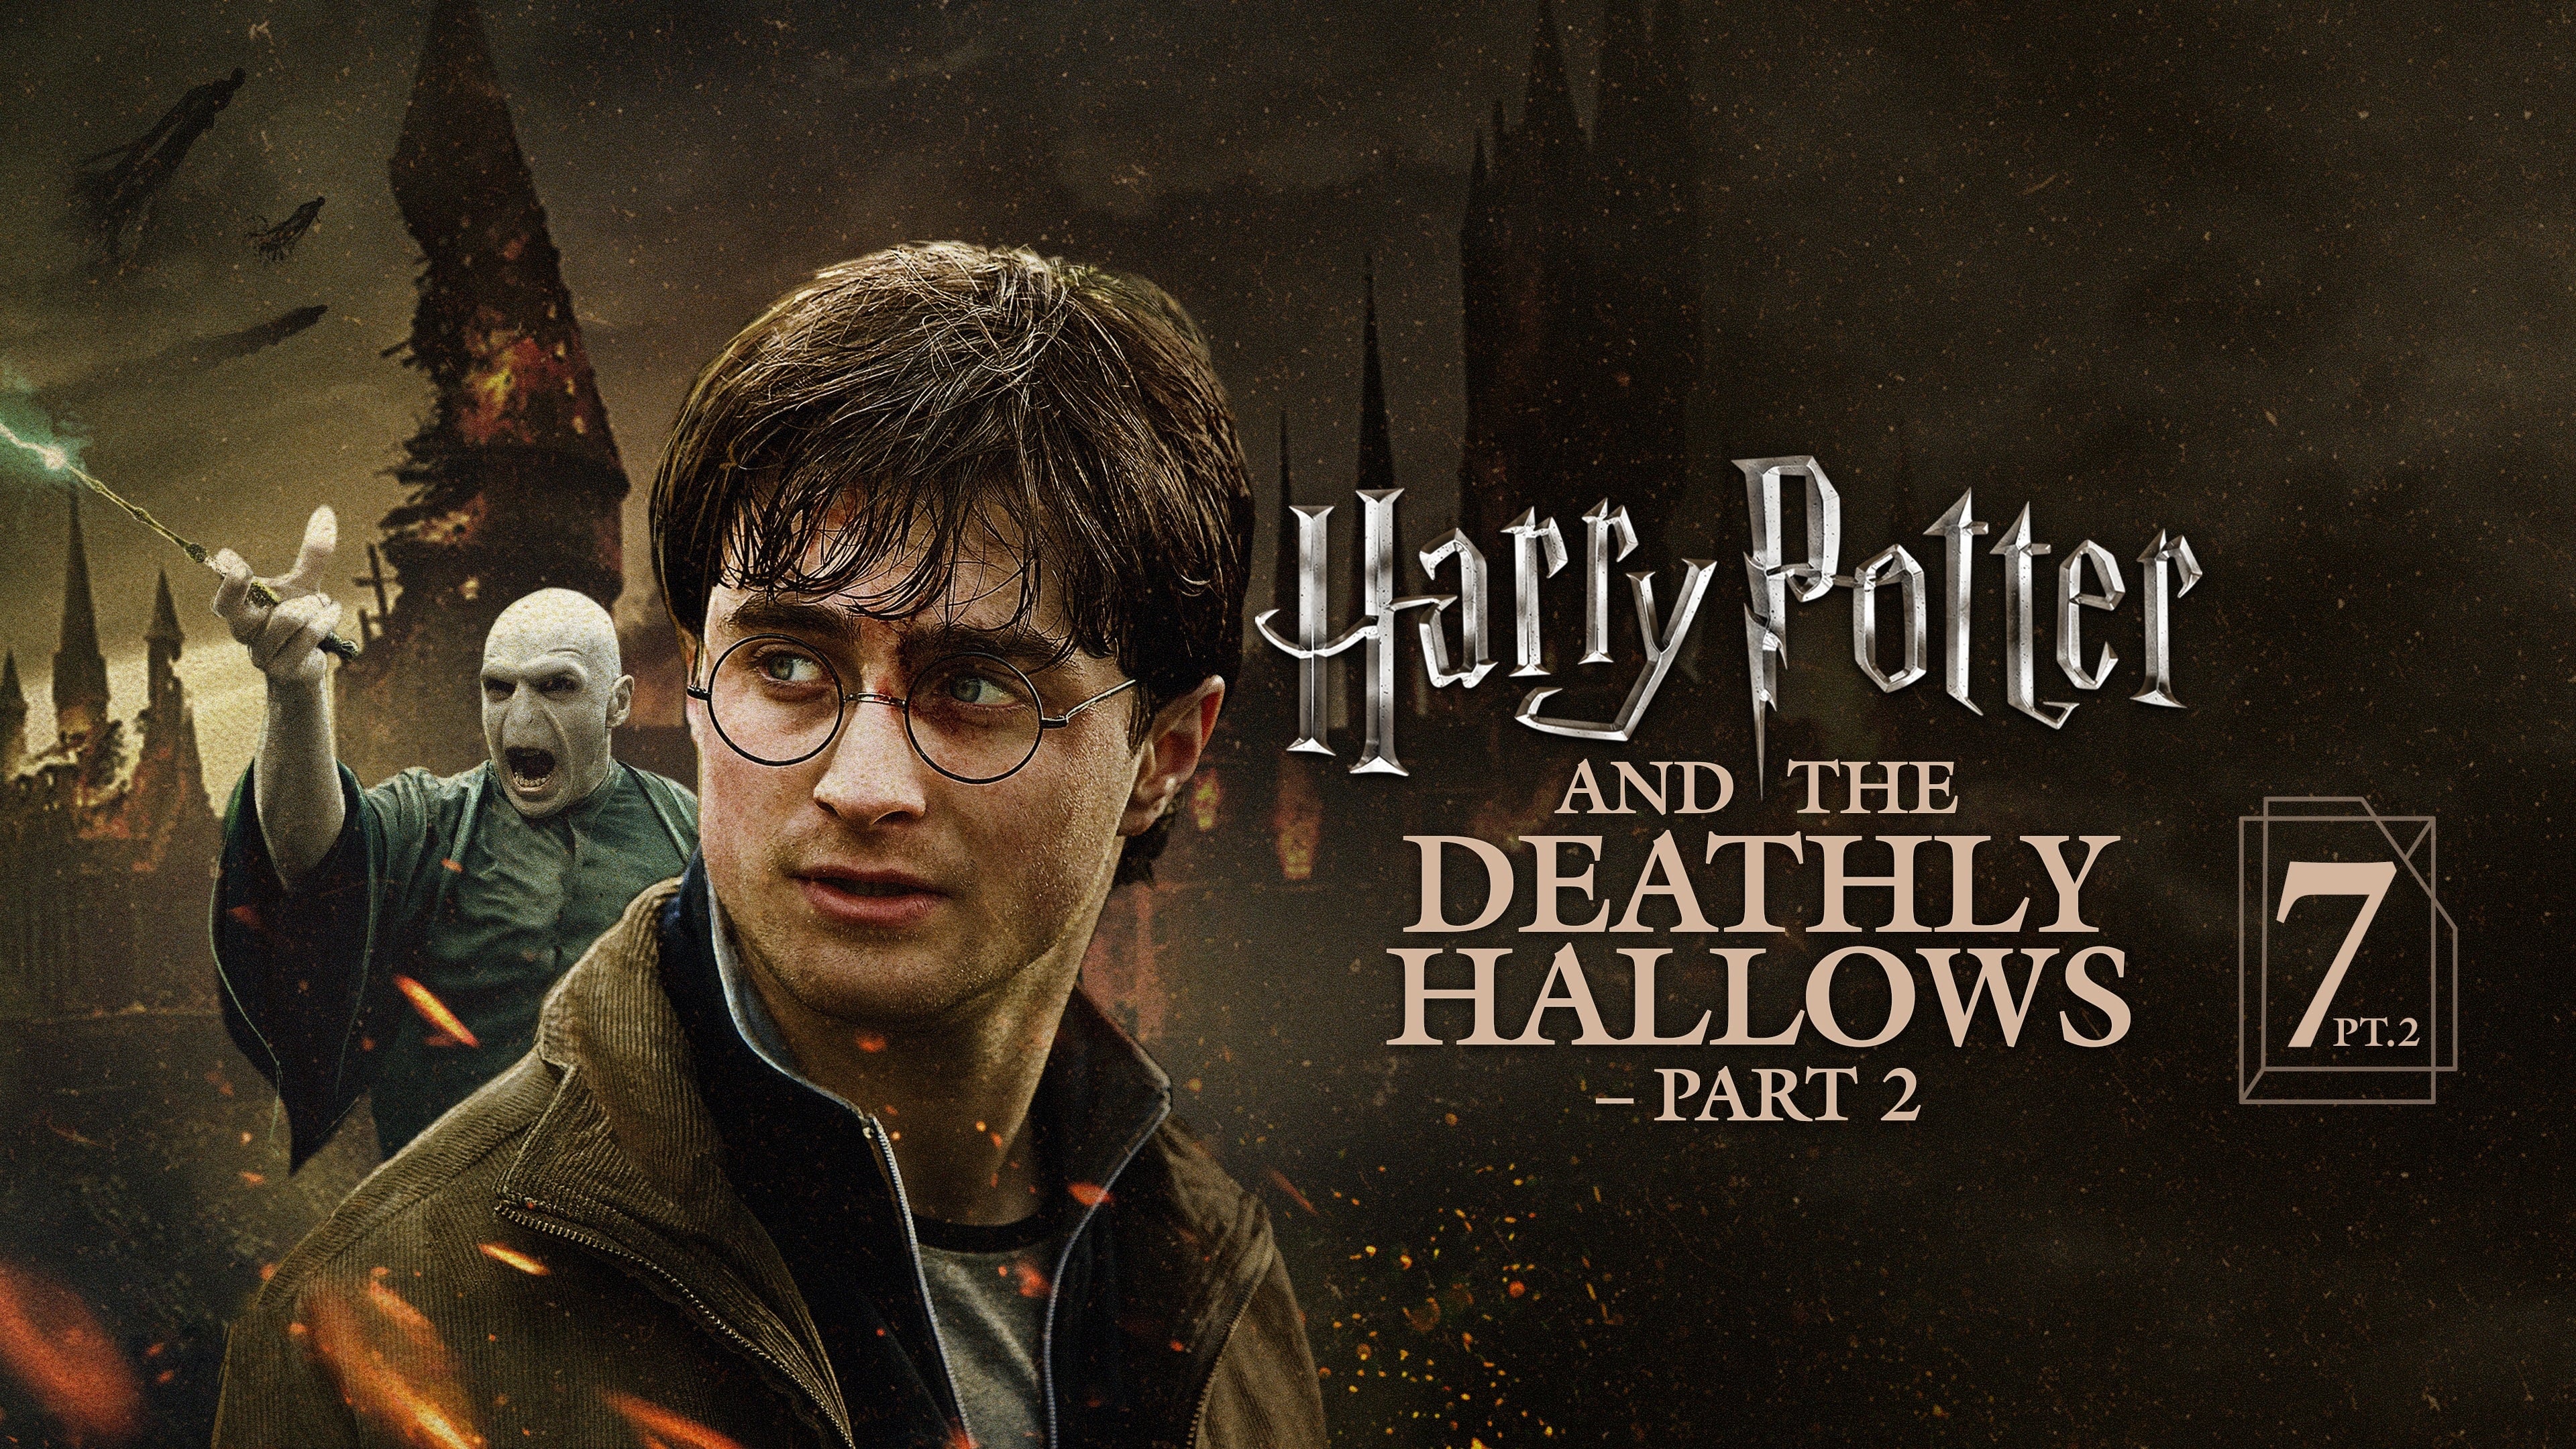 Harry Potter et les Reliques de la mort : 2ème partie (2011)